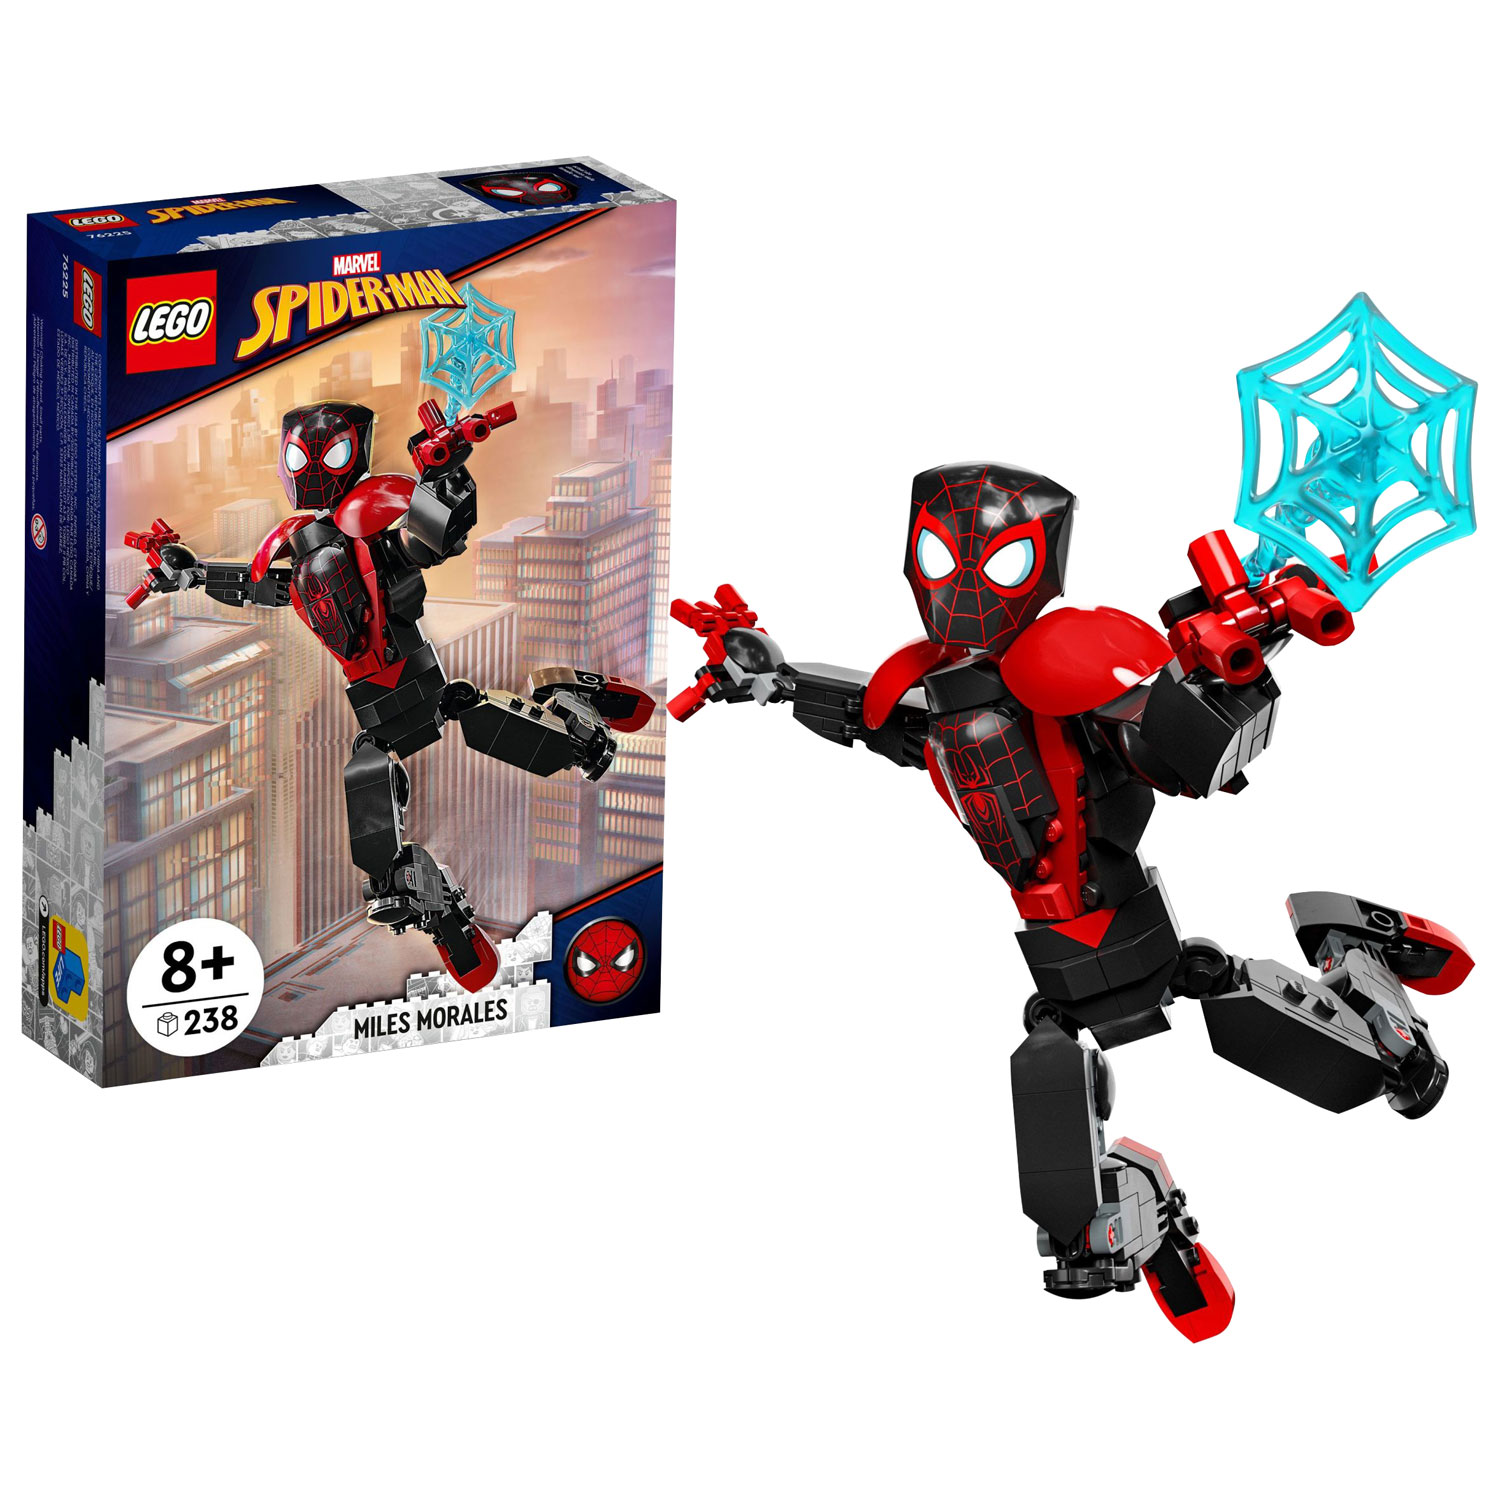 LEGO Marvel Spider-Man: Miles Morales - 238 Pieces (76225)